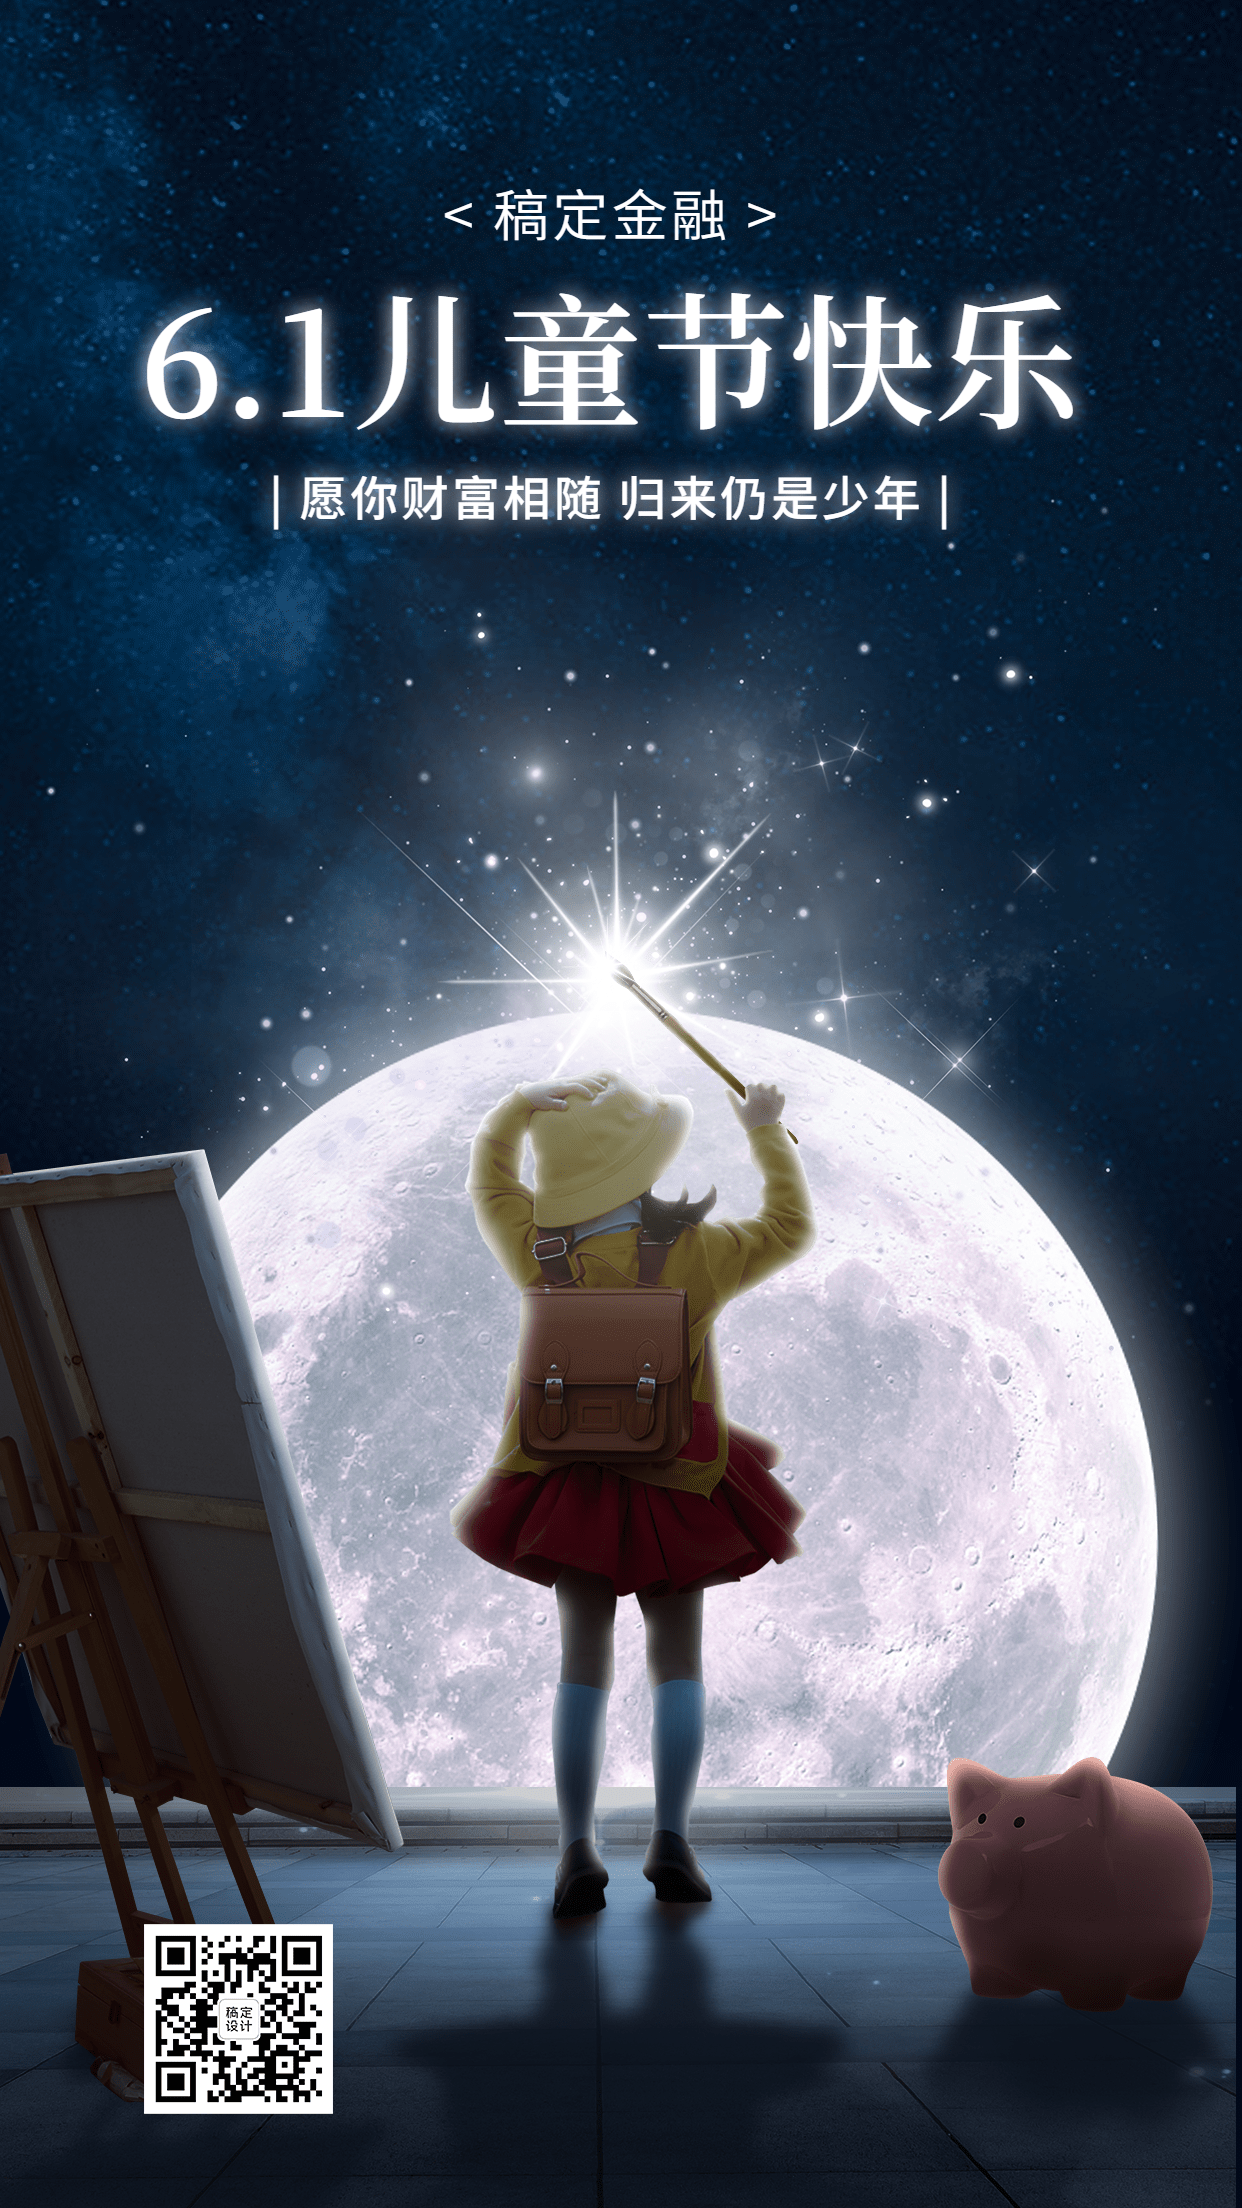 61儿童节金融保险节日祝福创意插画梦幻风手机海报预览效果